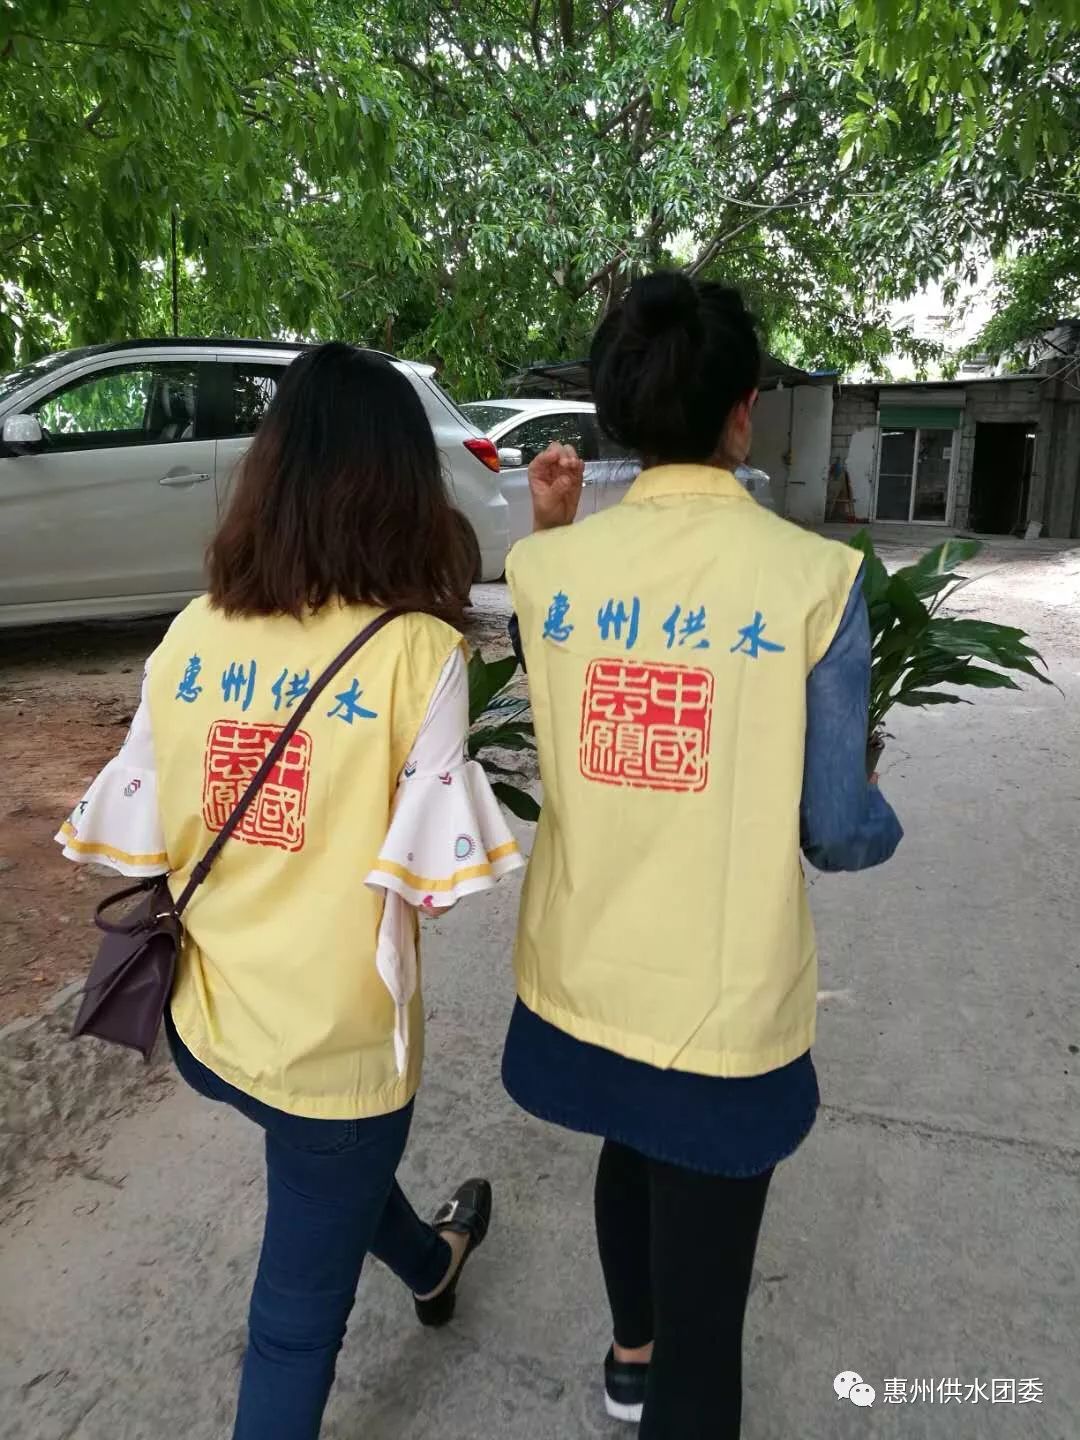 暮春四月 春風送暖|惠州市供水有限公司職工志願服務隊開展“每月一探”幫扶探訪活動